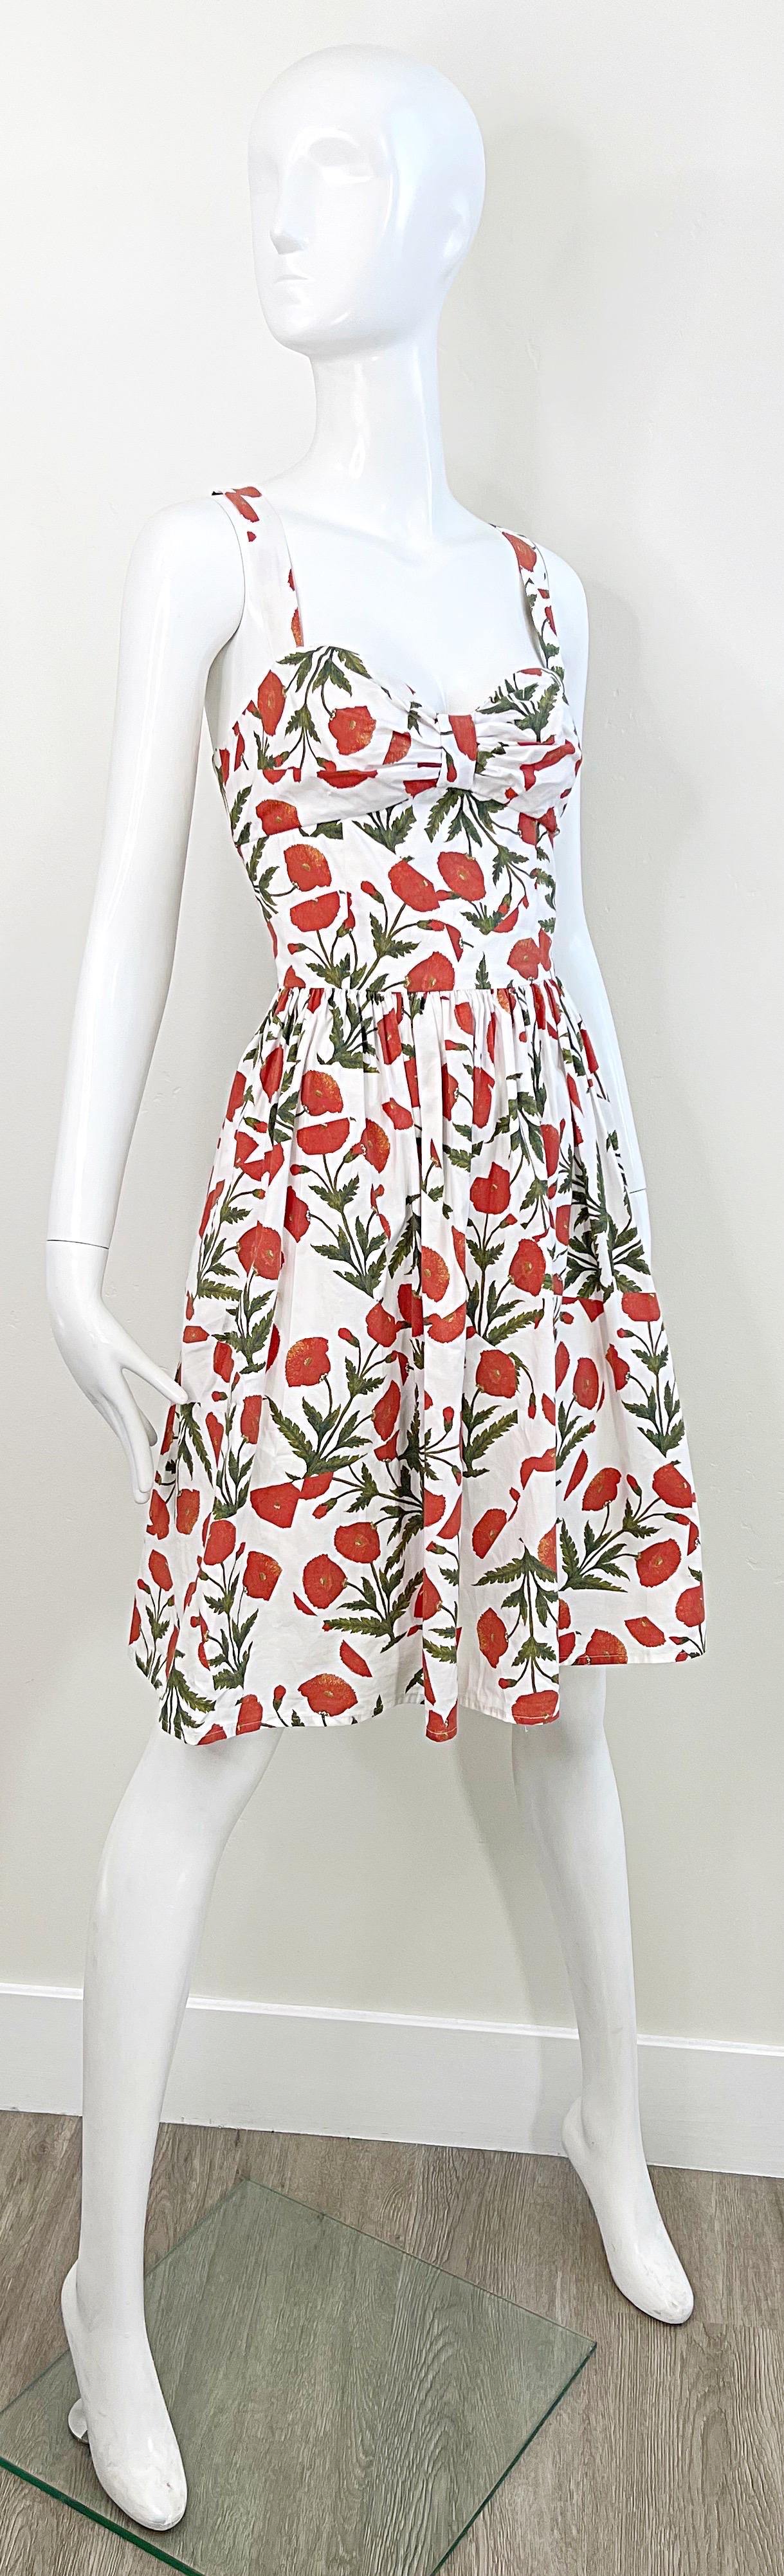 Women's 1990s Oscar de la Renta Poppy Print Size 6 Fit & Flare Vintage Cotton 90s Dress For Sale